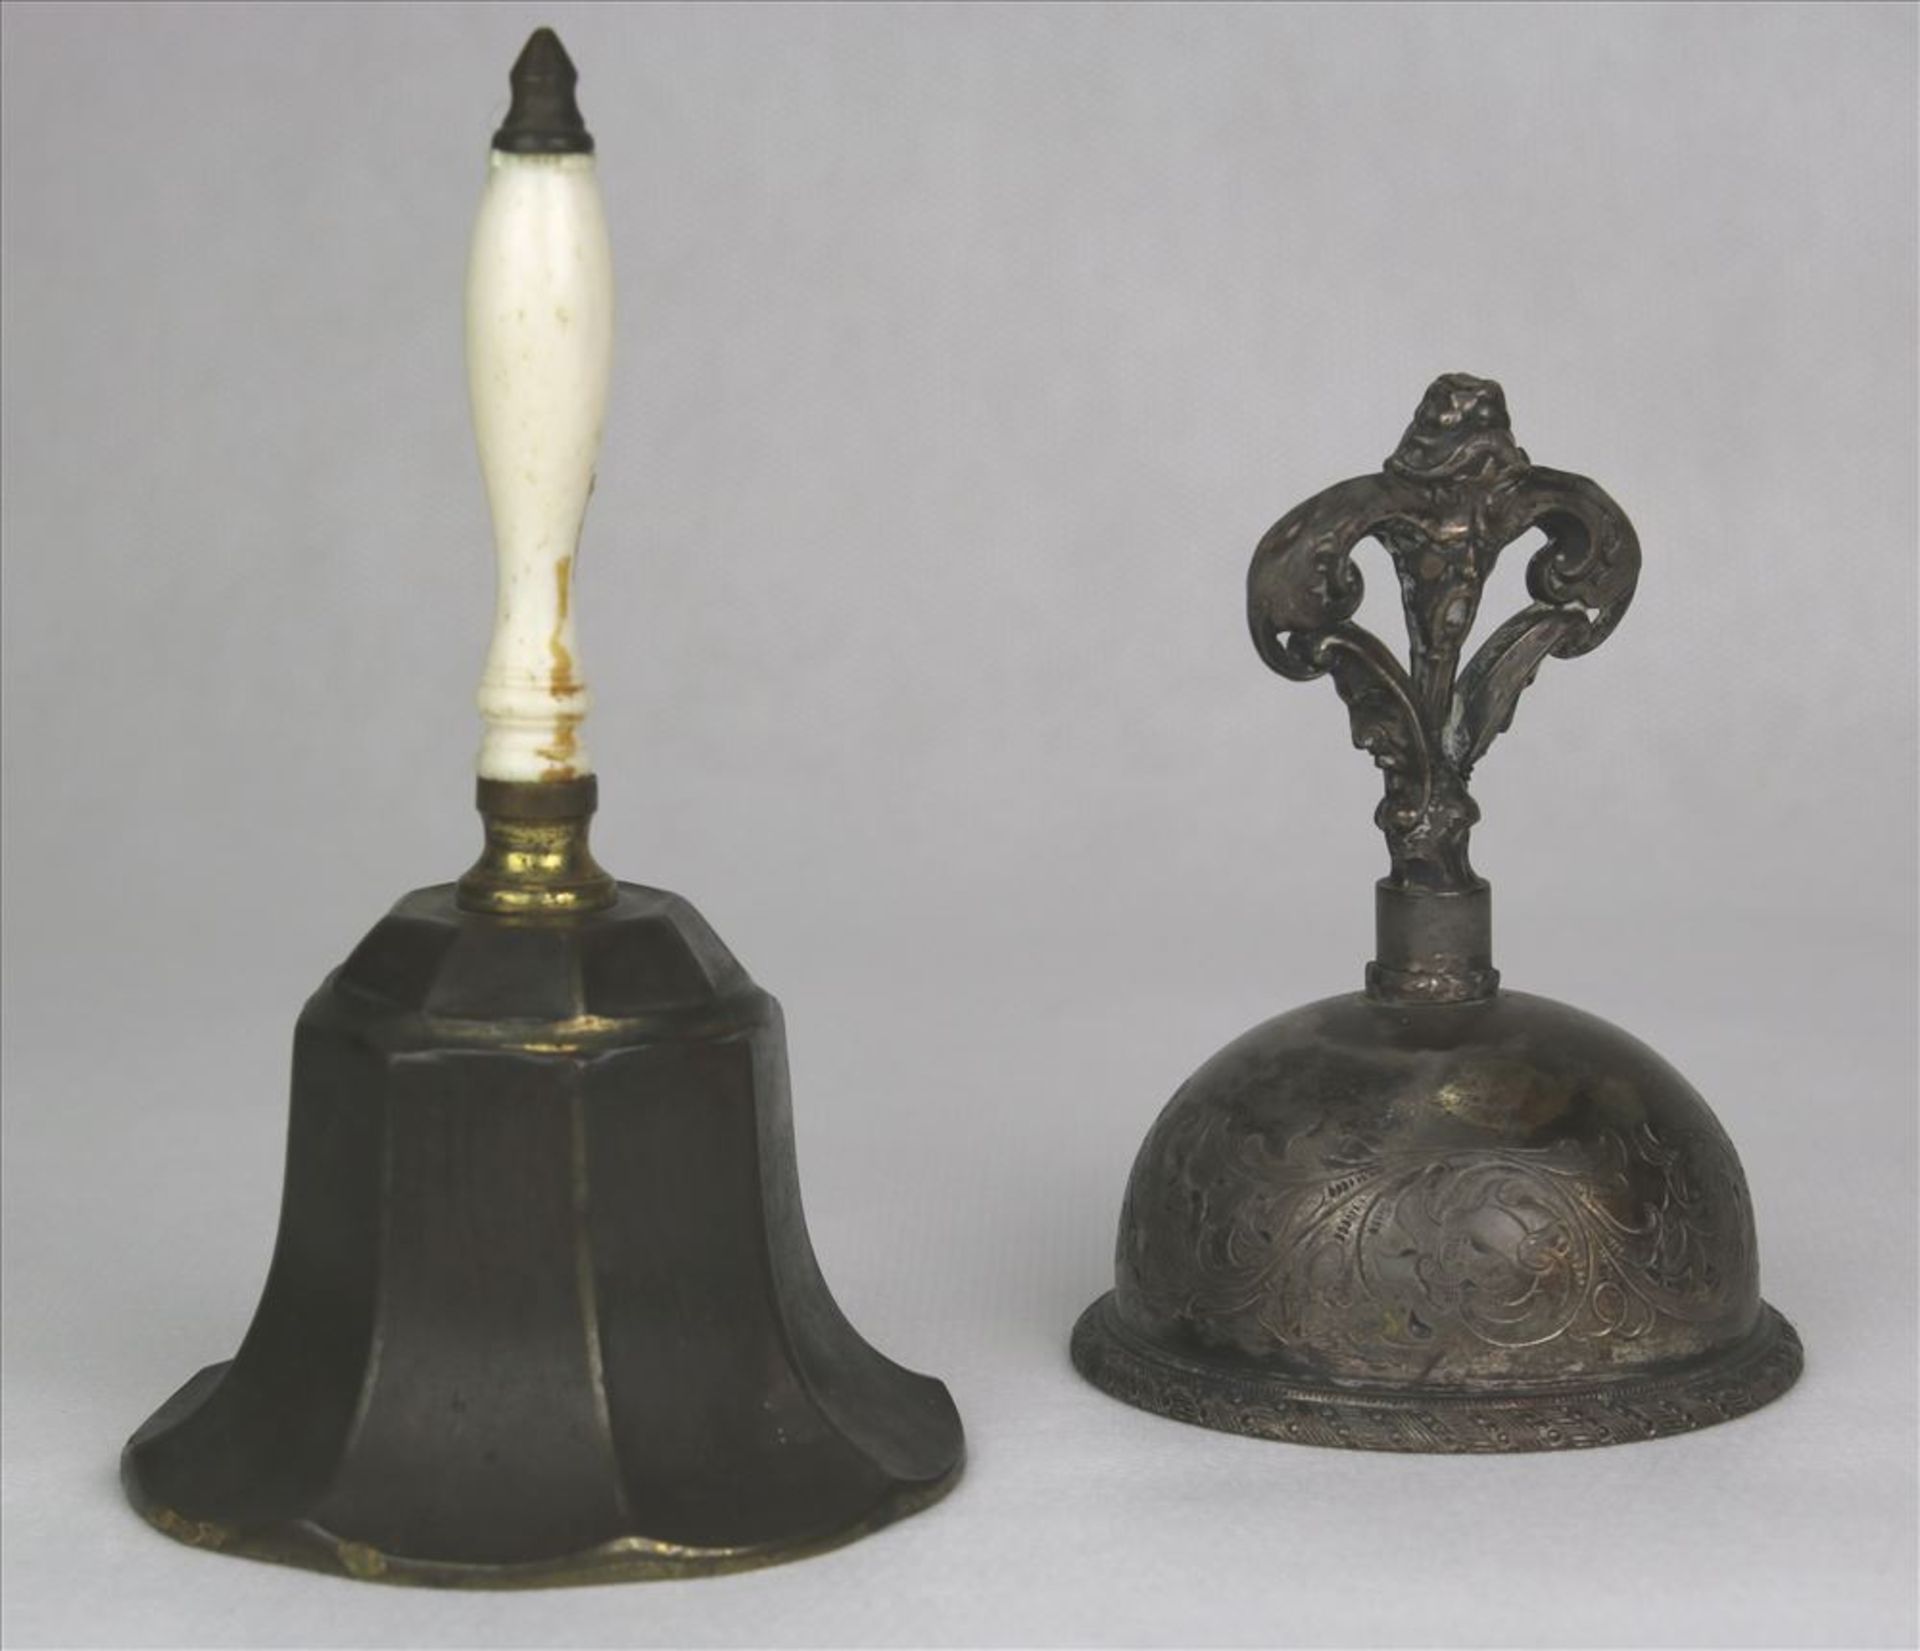 Konvolut Glocken 19./20. Jahrhundert. Zwei Tischglocken aus diversen Materialien gefertigt. Größte